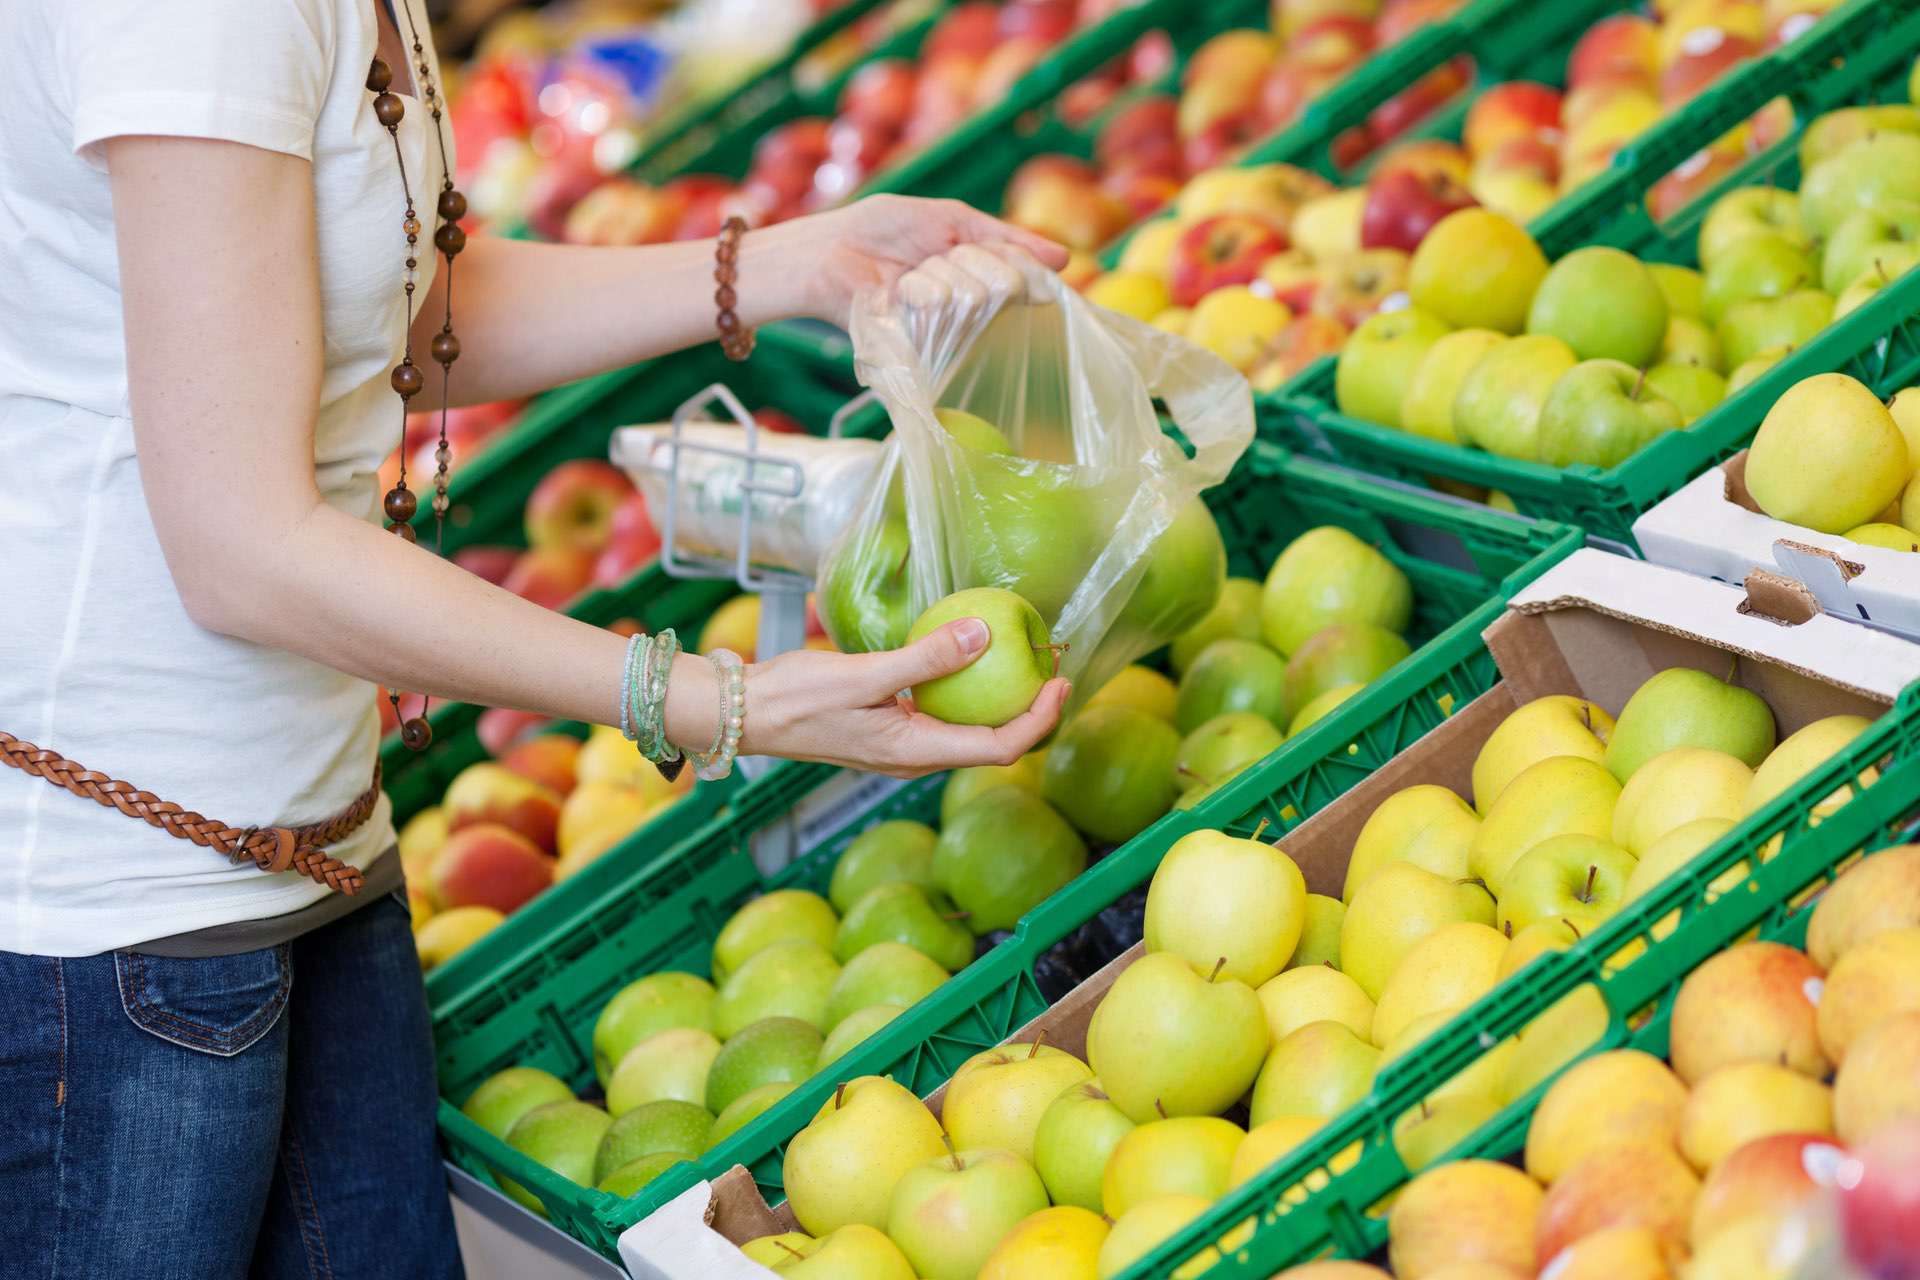 tint Verkeersopstopping G Geen gratis wegwerpzakjes voor groente en fruit meer in deze supermarkten